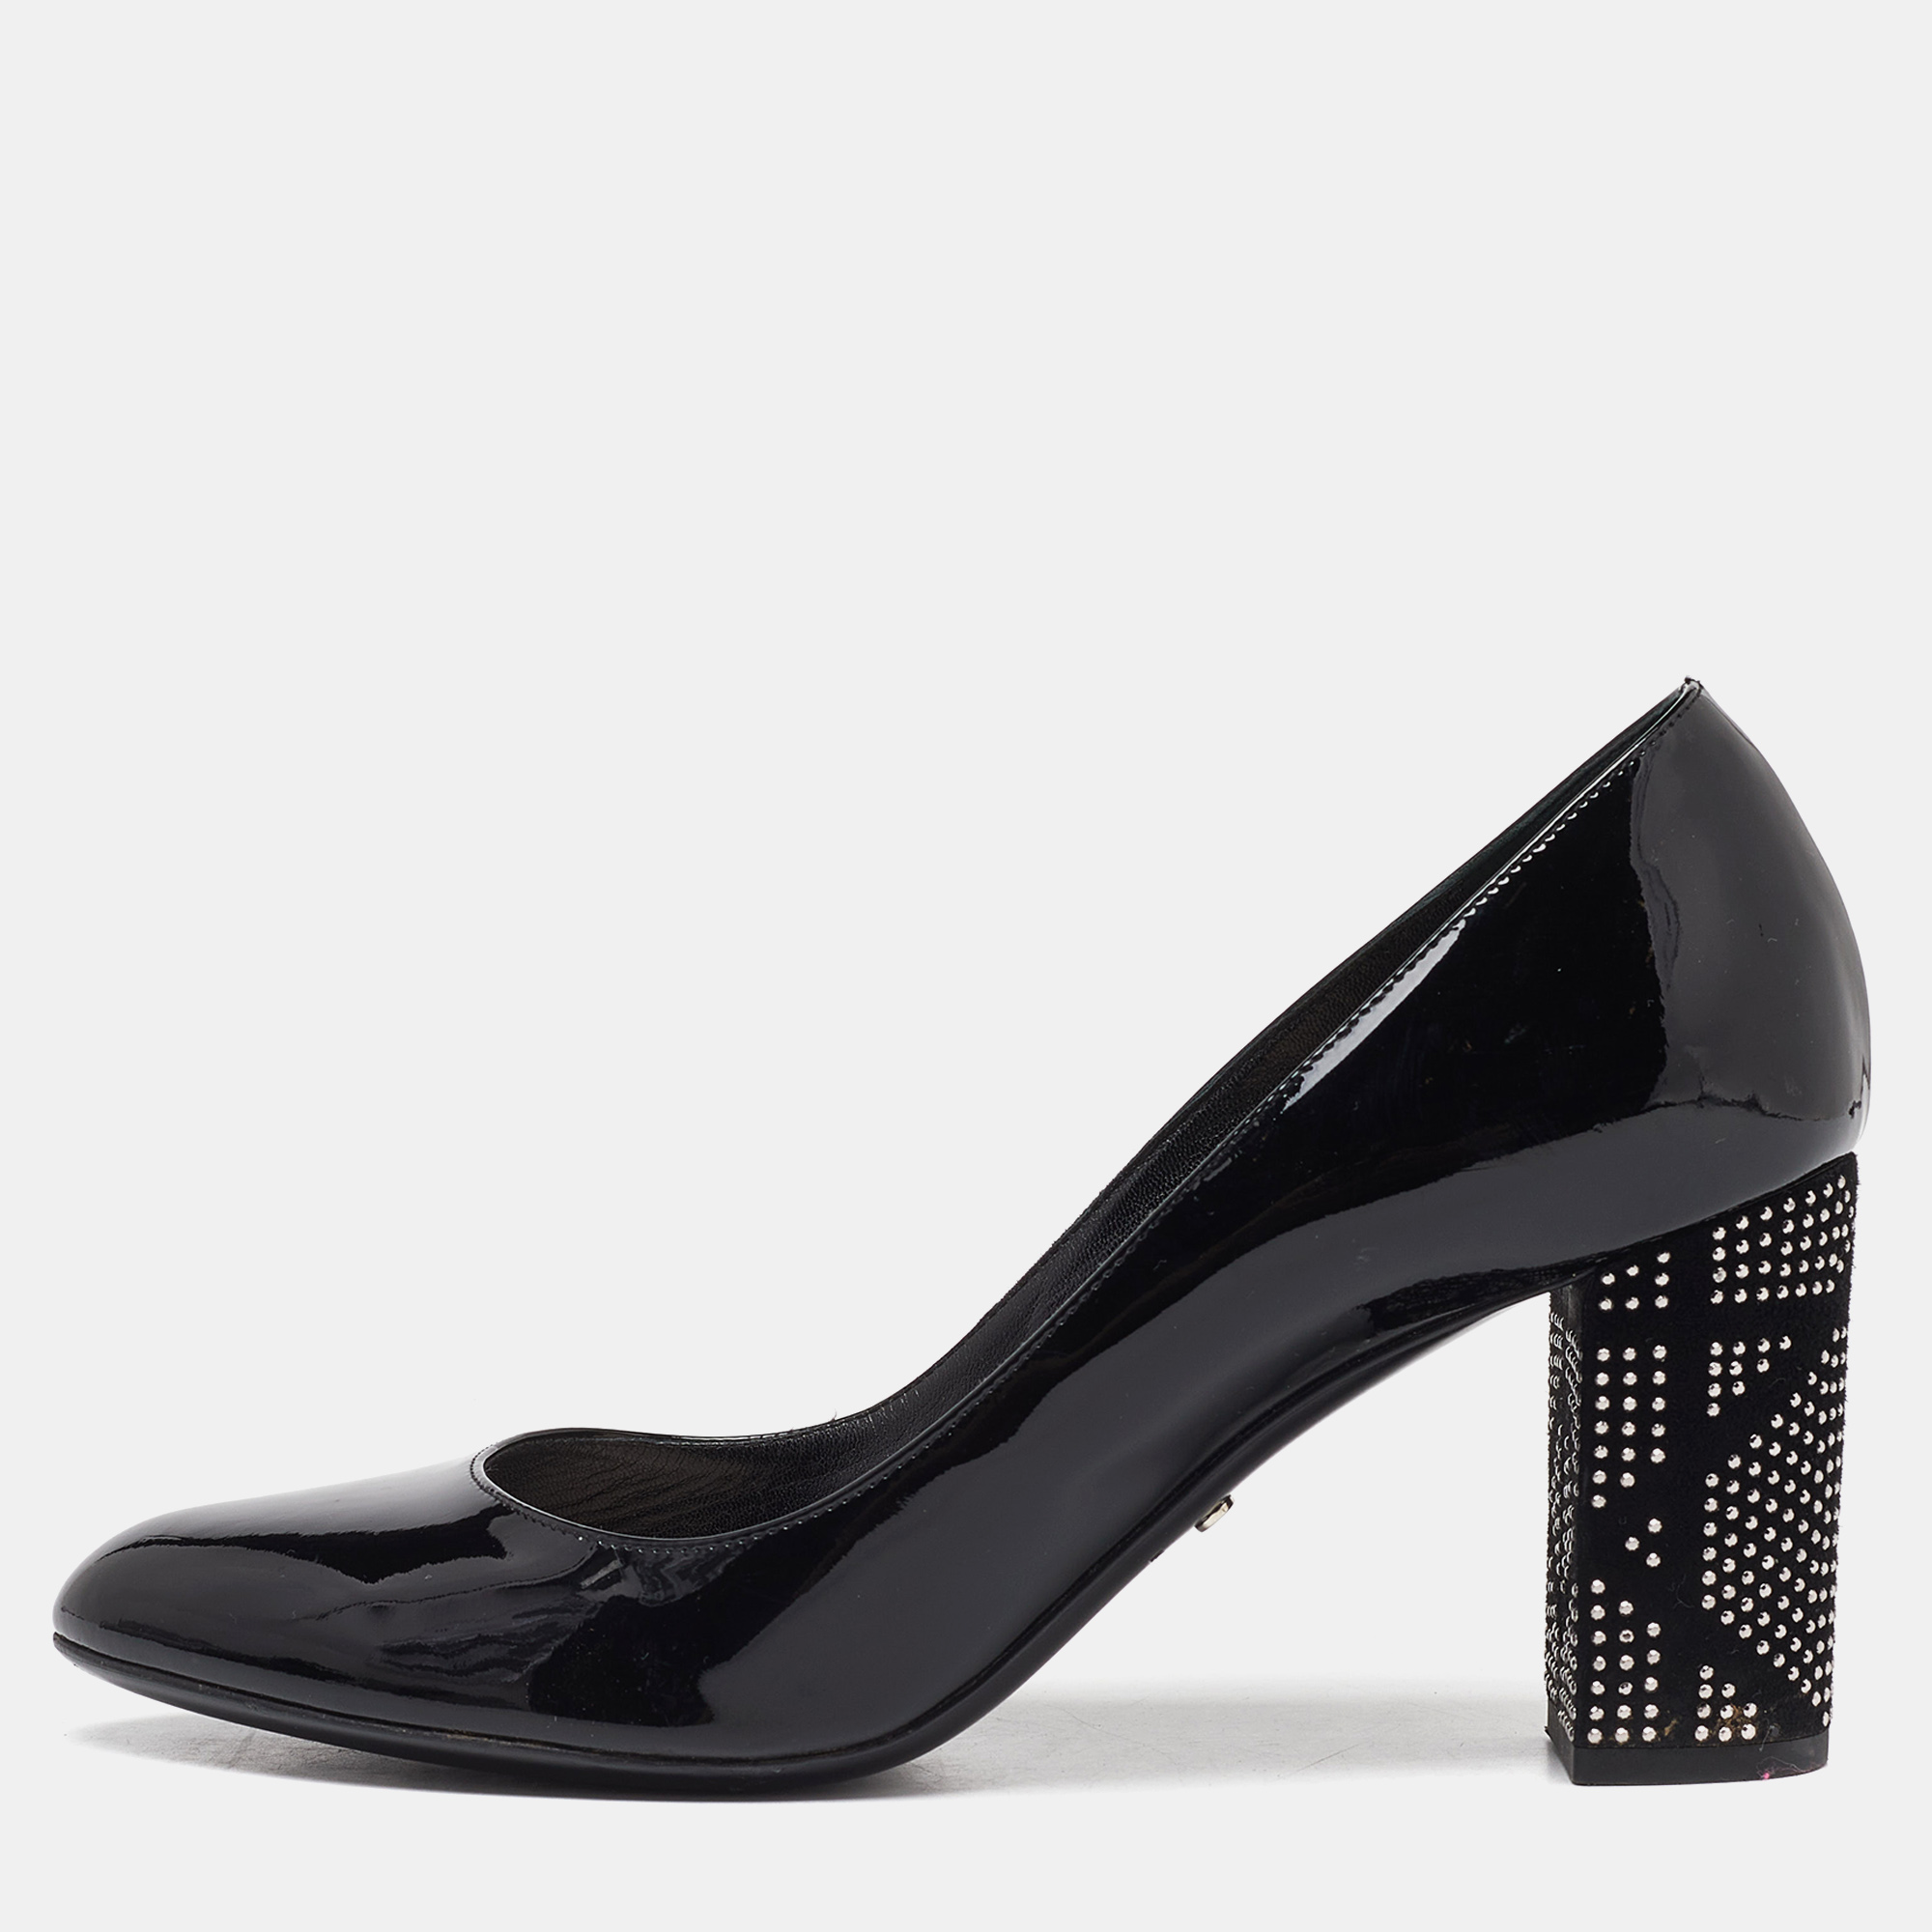 Dior black patent leather stud embellished block heel pumps size 40